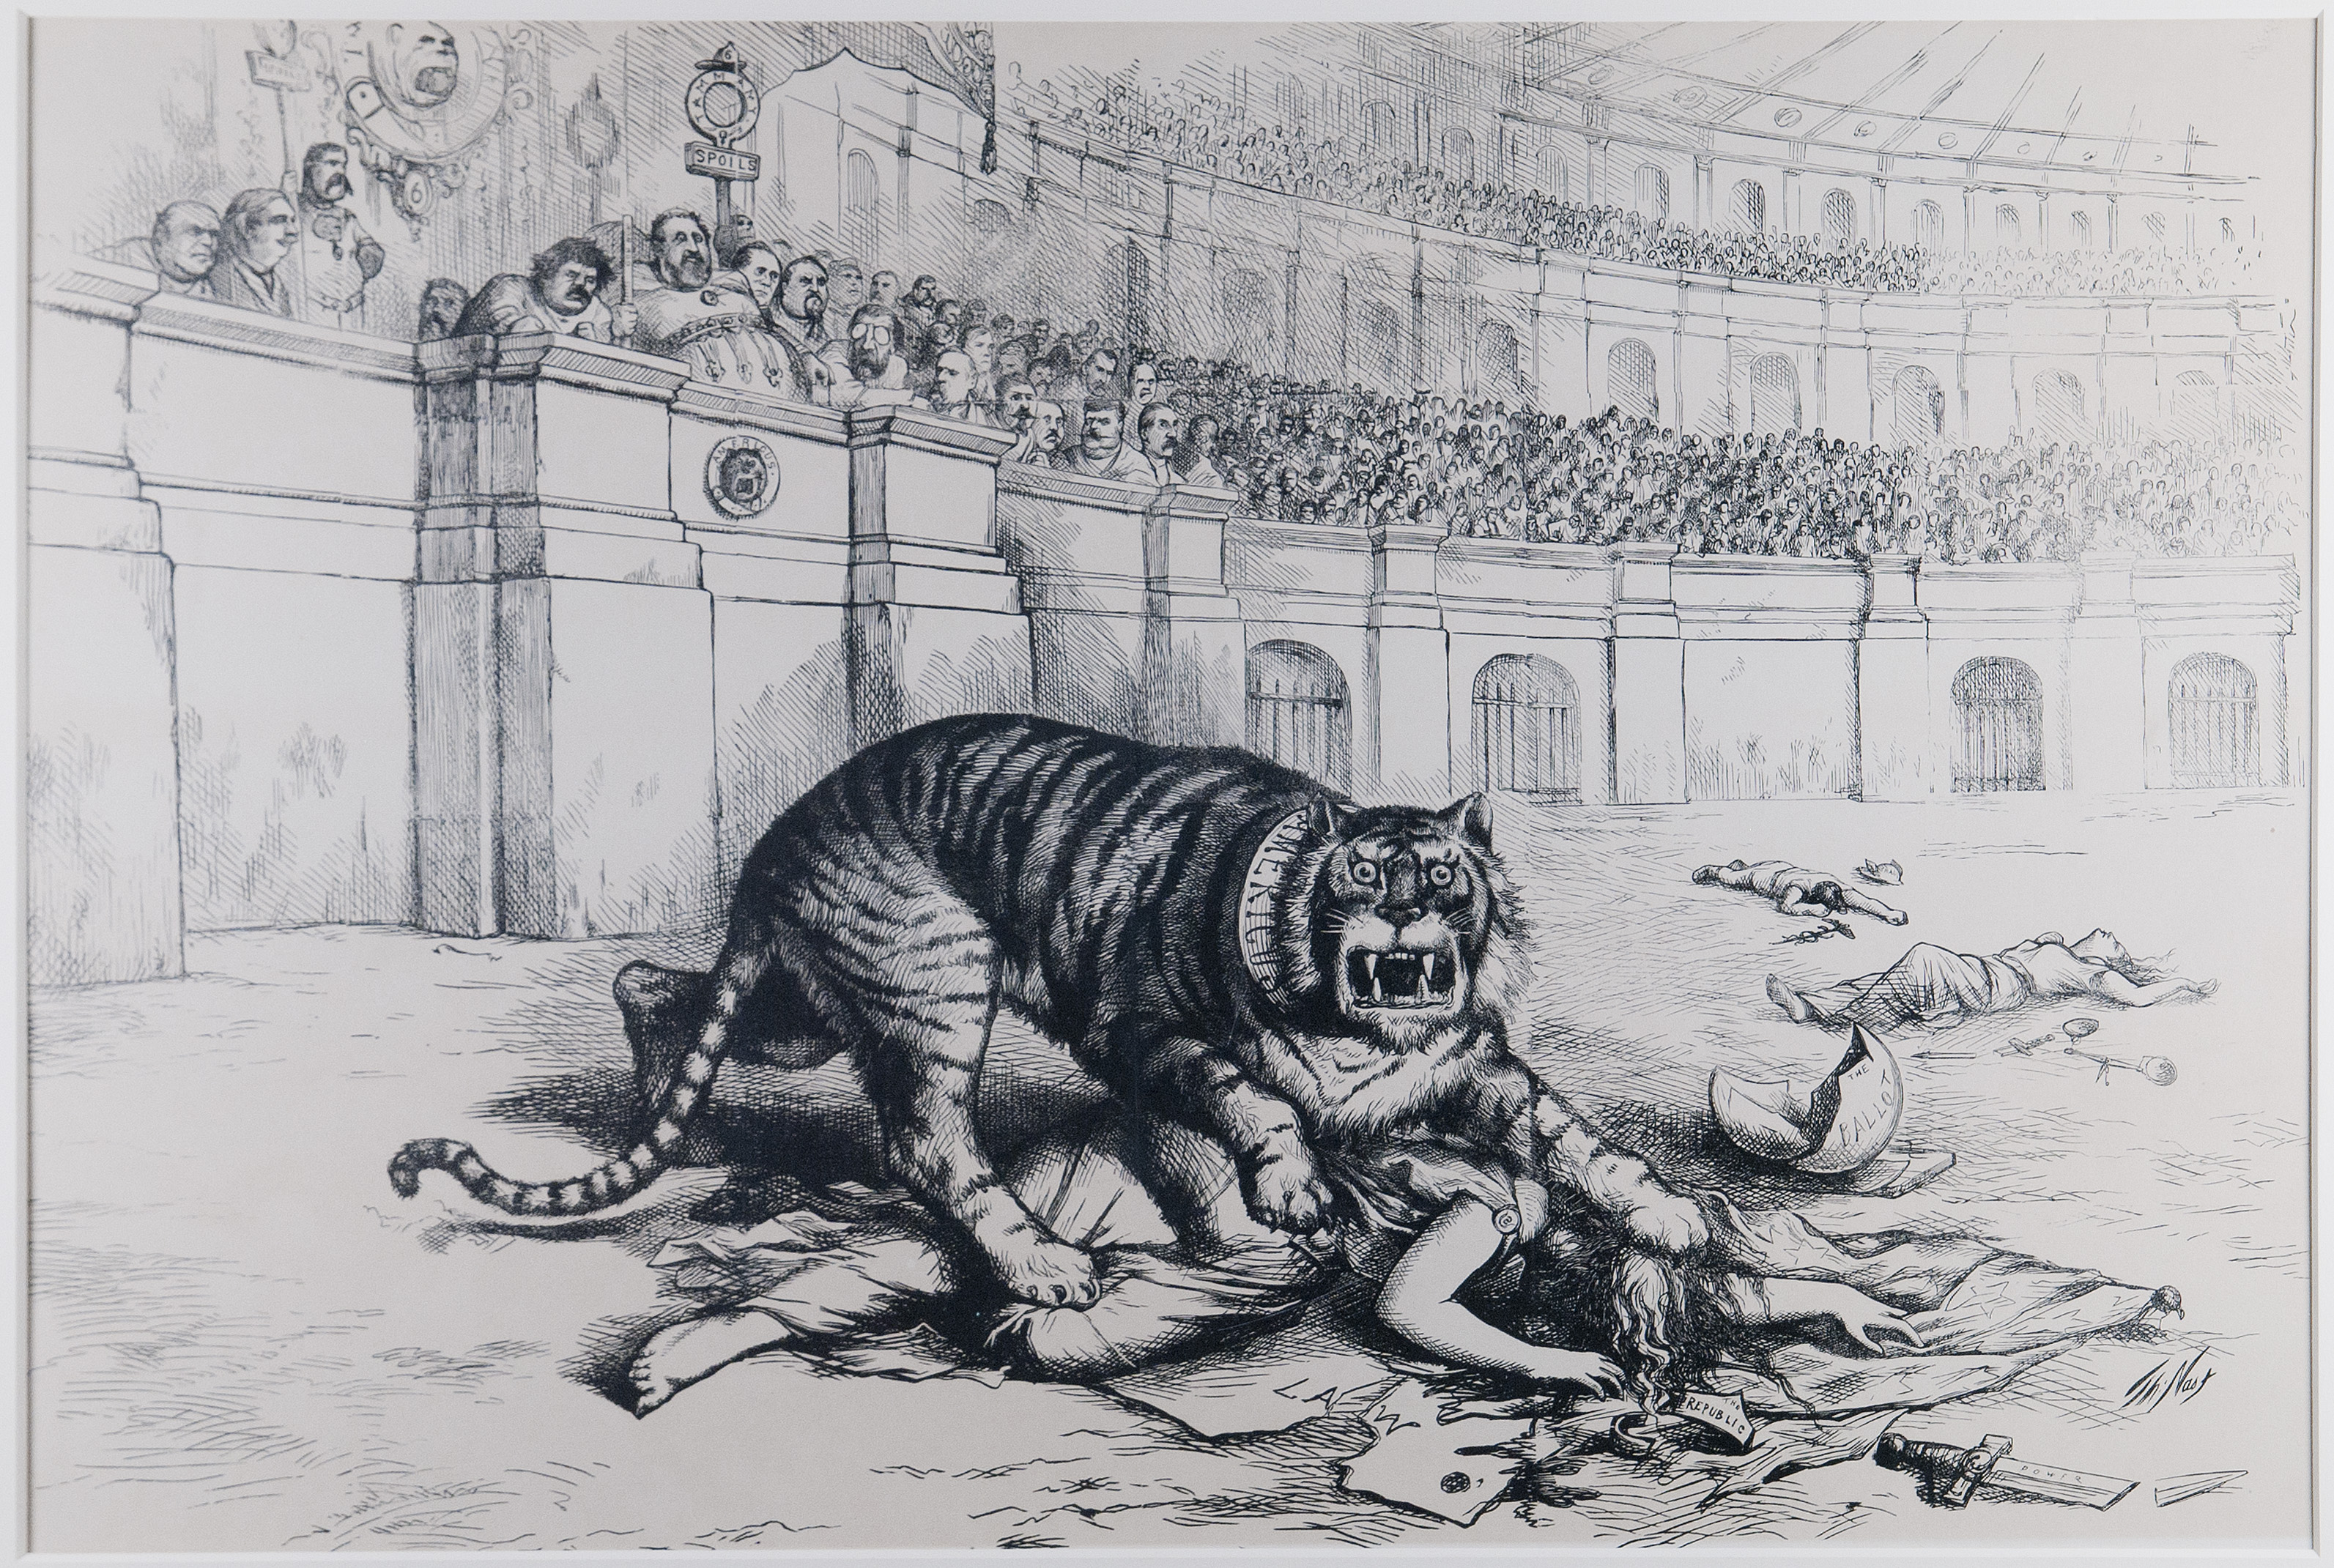 tammany hall tiger